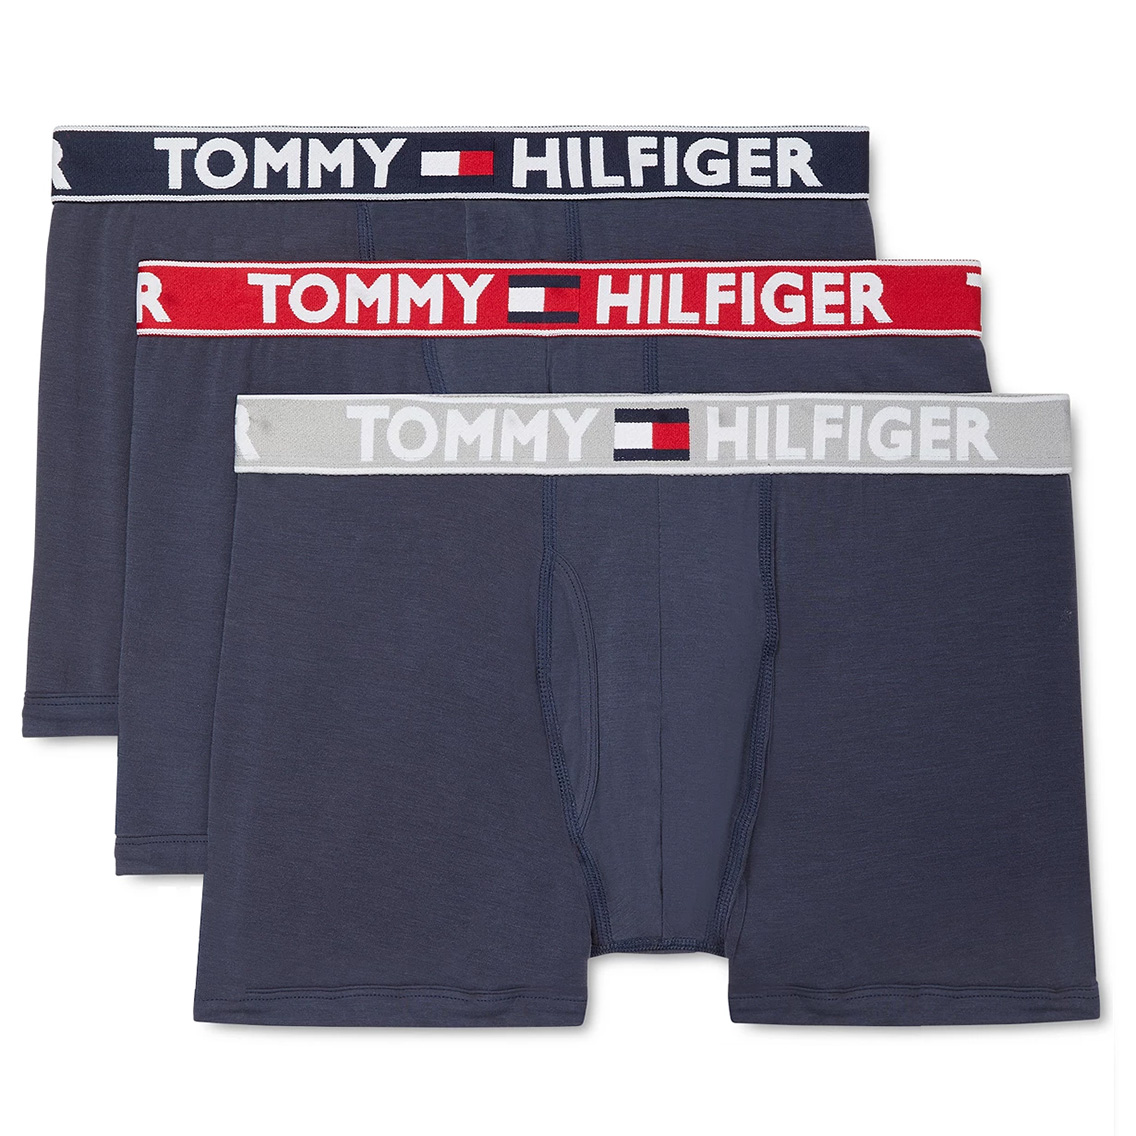 [09T4071-410] TOMMY HILFIGER トミーヒルフィガー ボクサーパンツ メンズ アンダーウェア インナー 男性 下着 ブランド おすすめ 人気